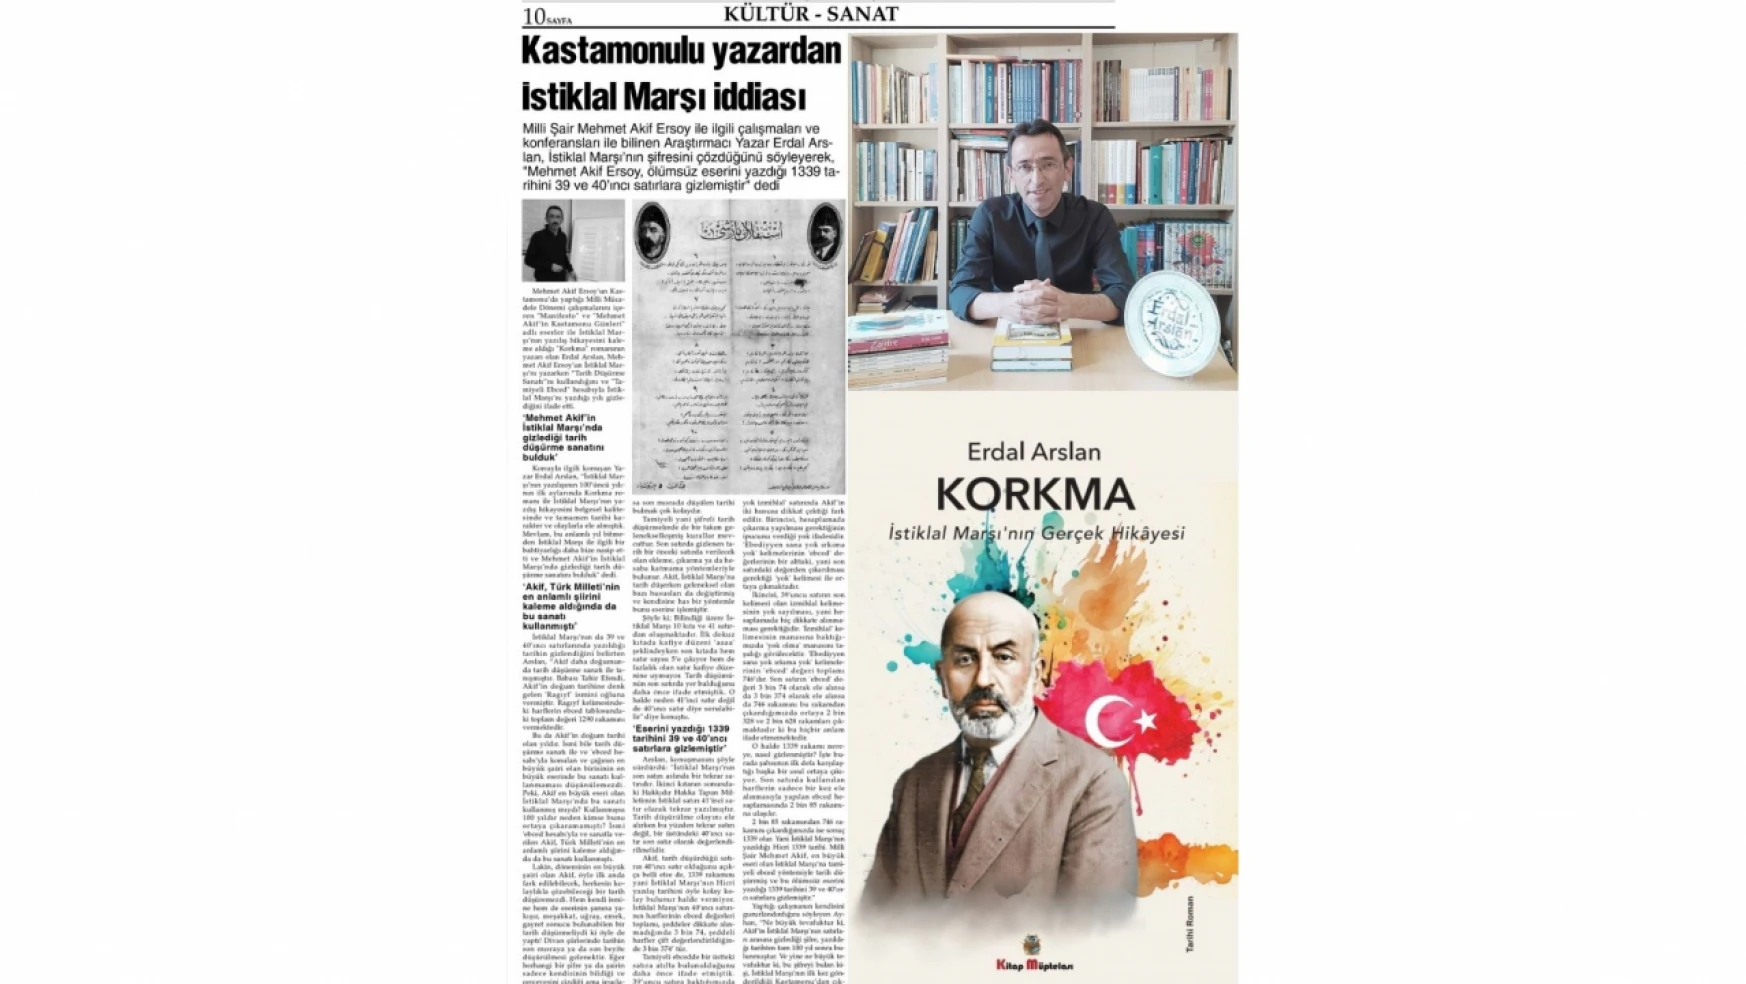 Yazar Erdal Arslan Ulusal Gazetede